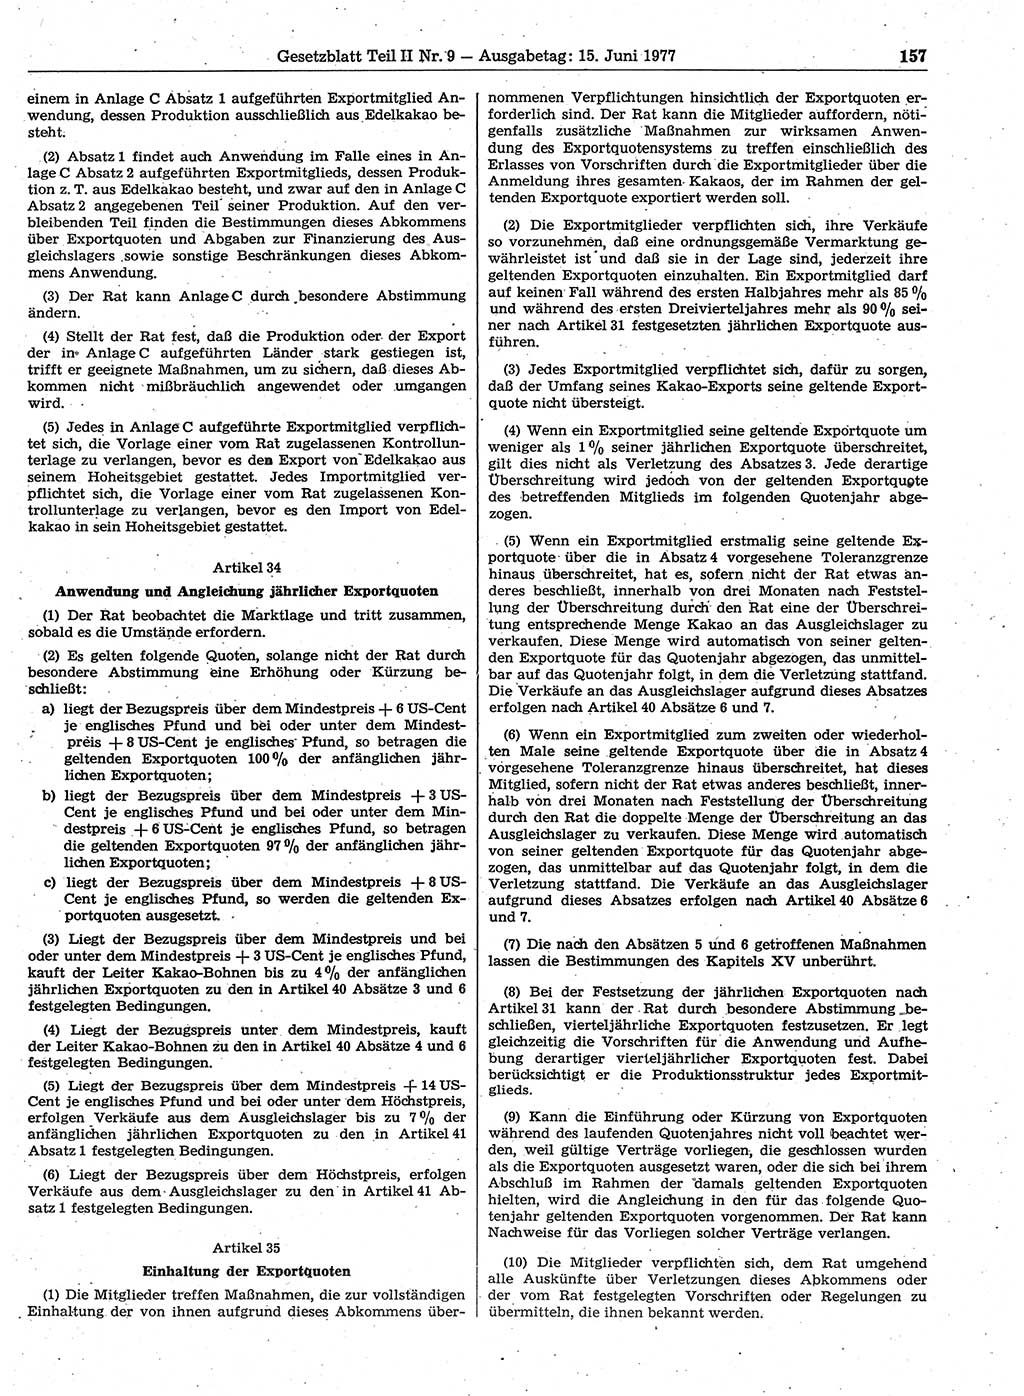 Gesetzblatt (GBl.) der Deutschen Demokratischen Republik (DDR) Teil ⅠⅠ 1977, Seite 157 (GBl. DDR ⅠⅠ 1977, S. 157)